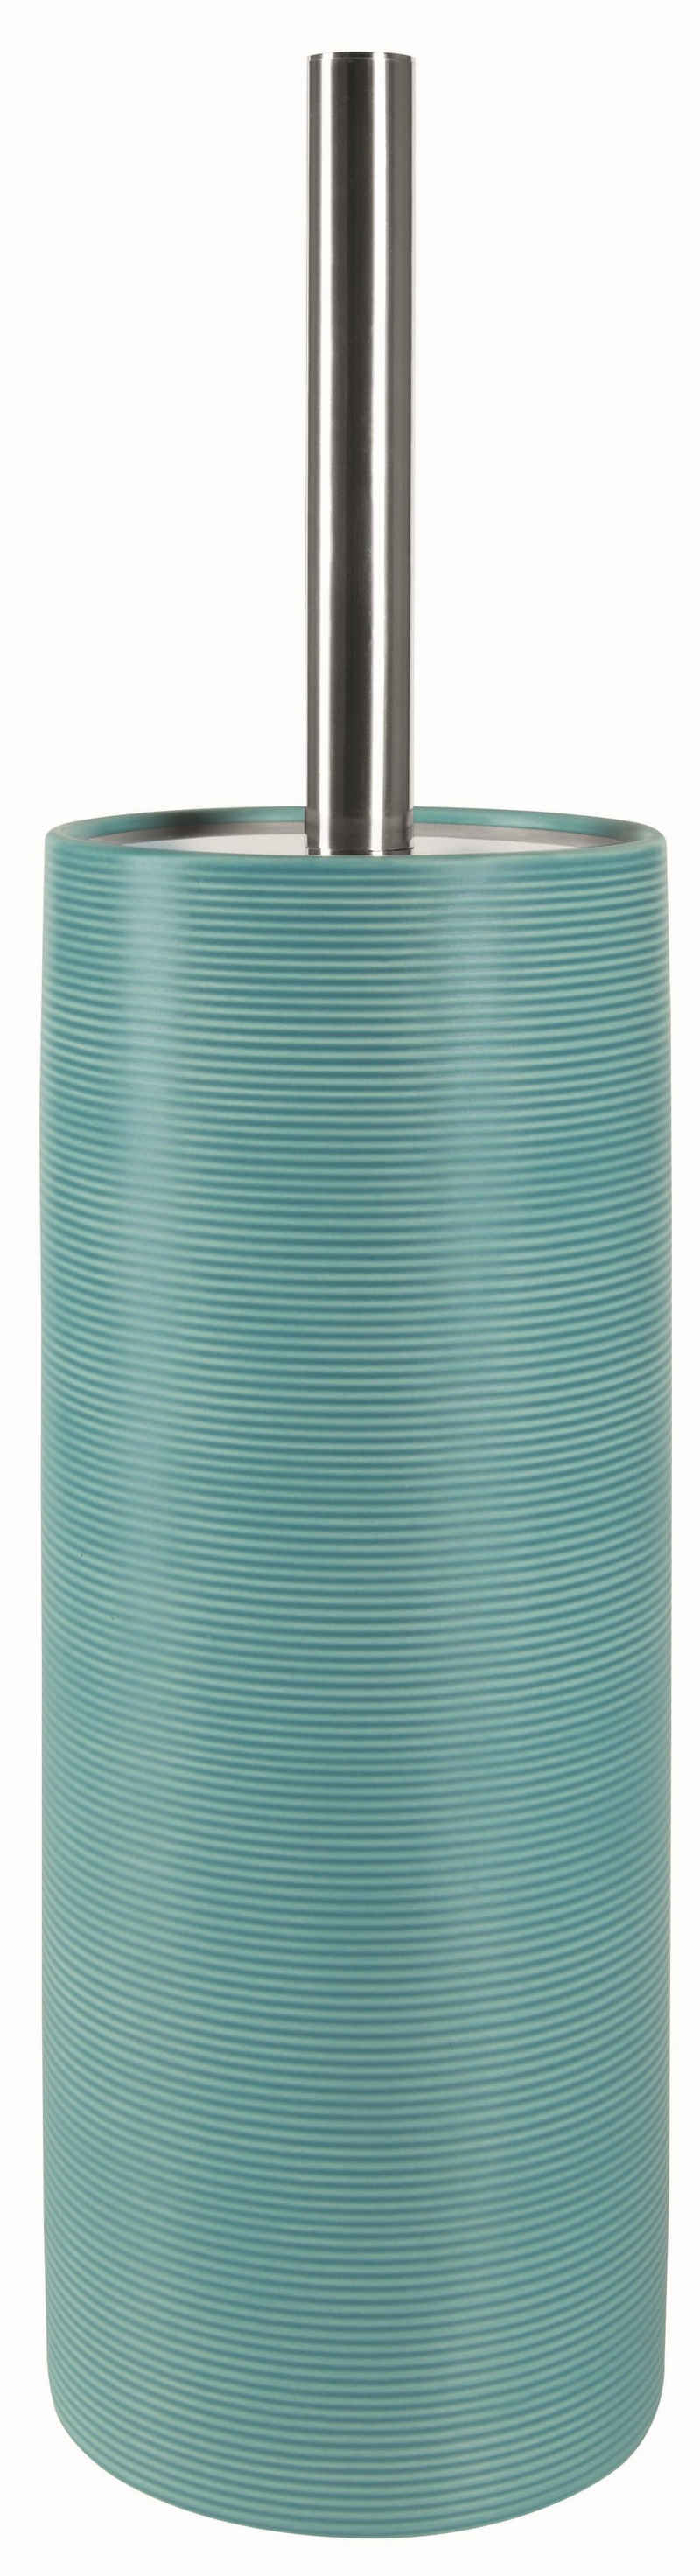 spirella Toilettenpapierhalter »WC-Bürste TUBE RIBBED«, Toilettenbürste aus hochwertiger Keramik, mit Deckel, mit Rillenstruktur in 3D-Effekt, türkisblau